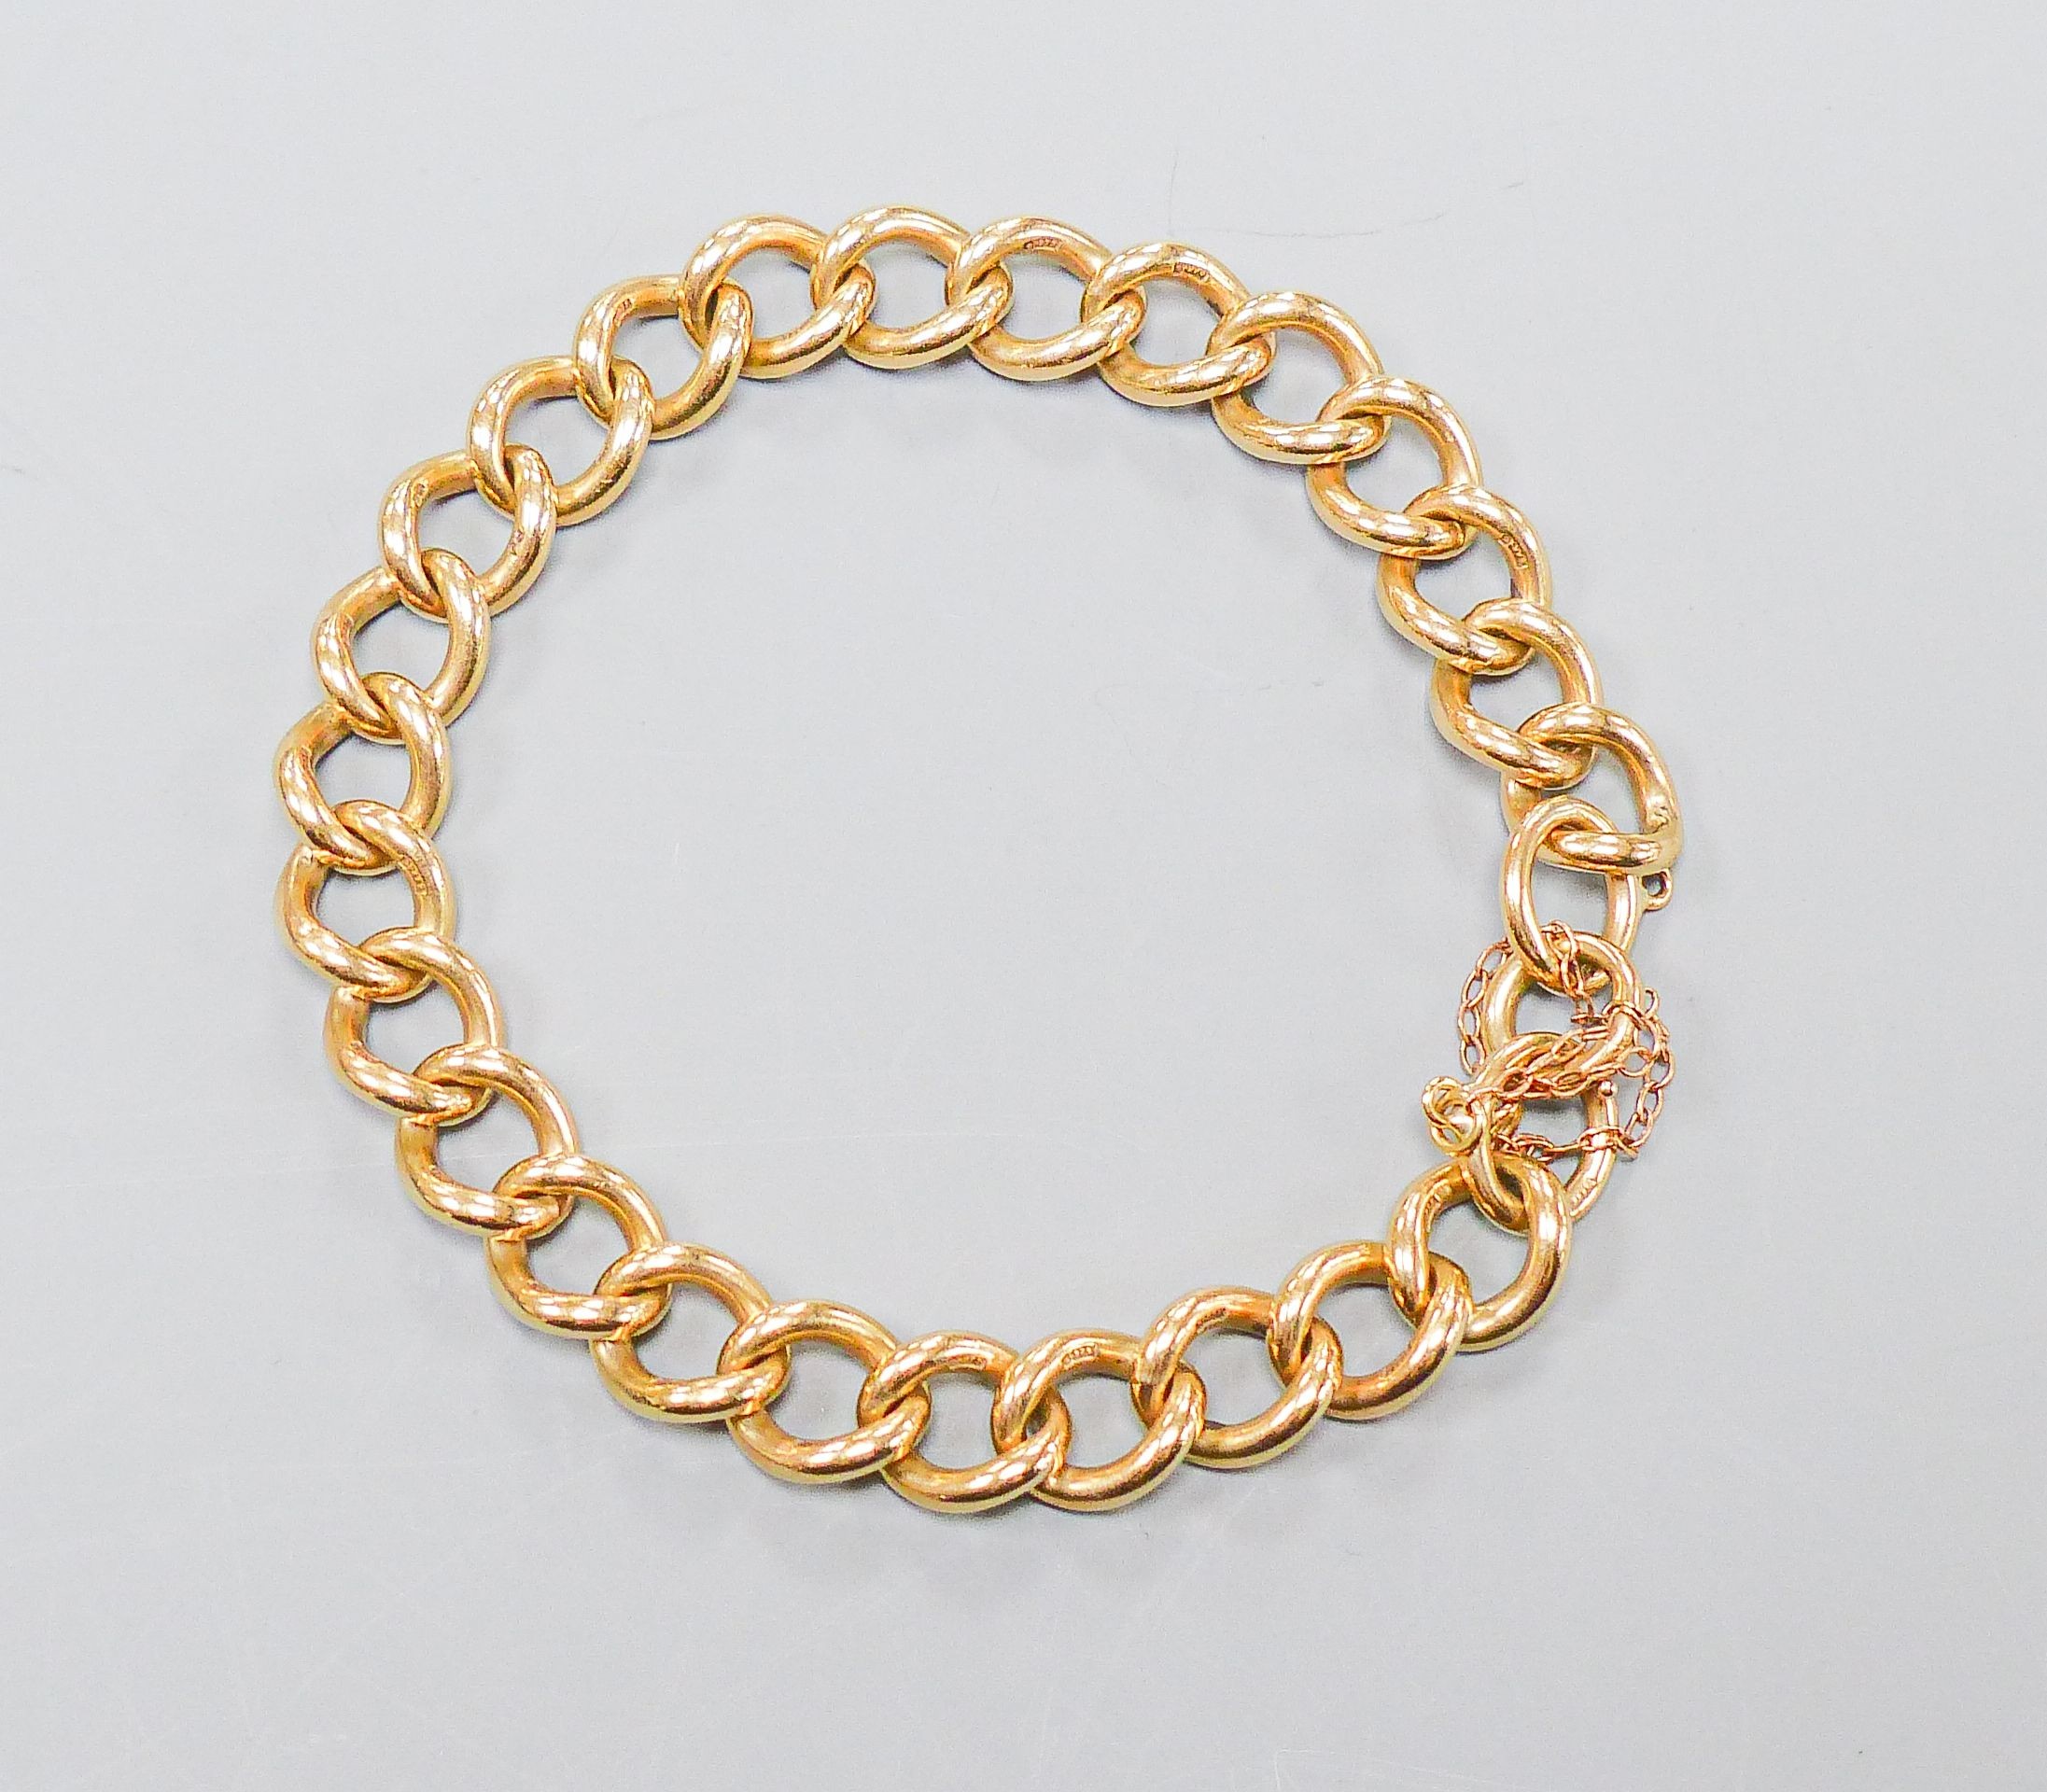 A 9ct gold curb-link bracelet, 20cm, 30.6 grams.